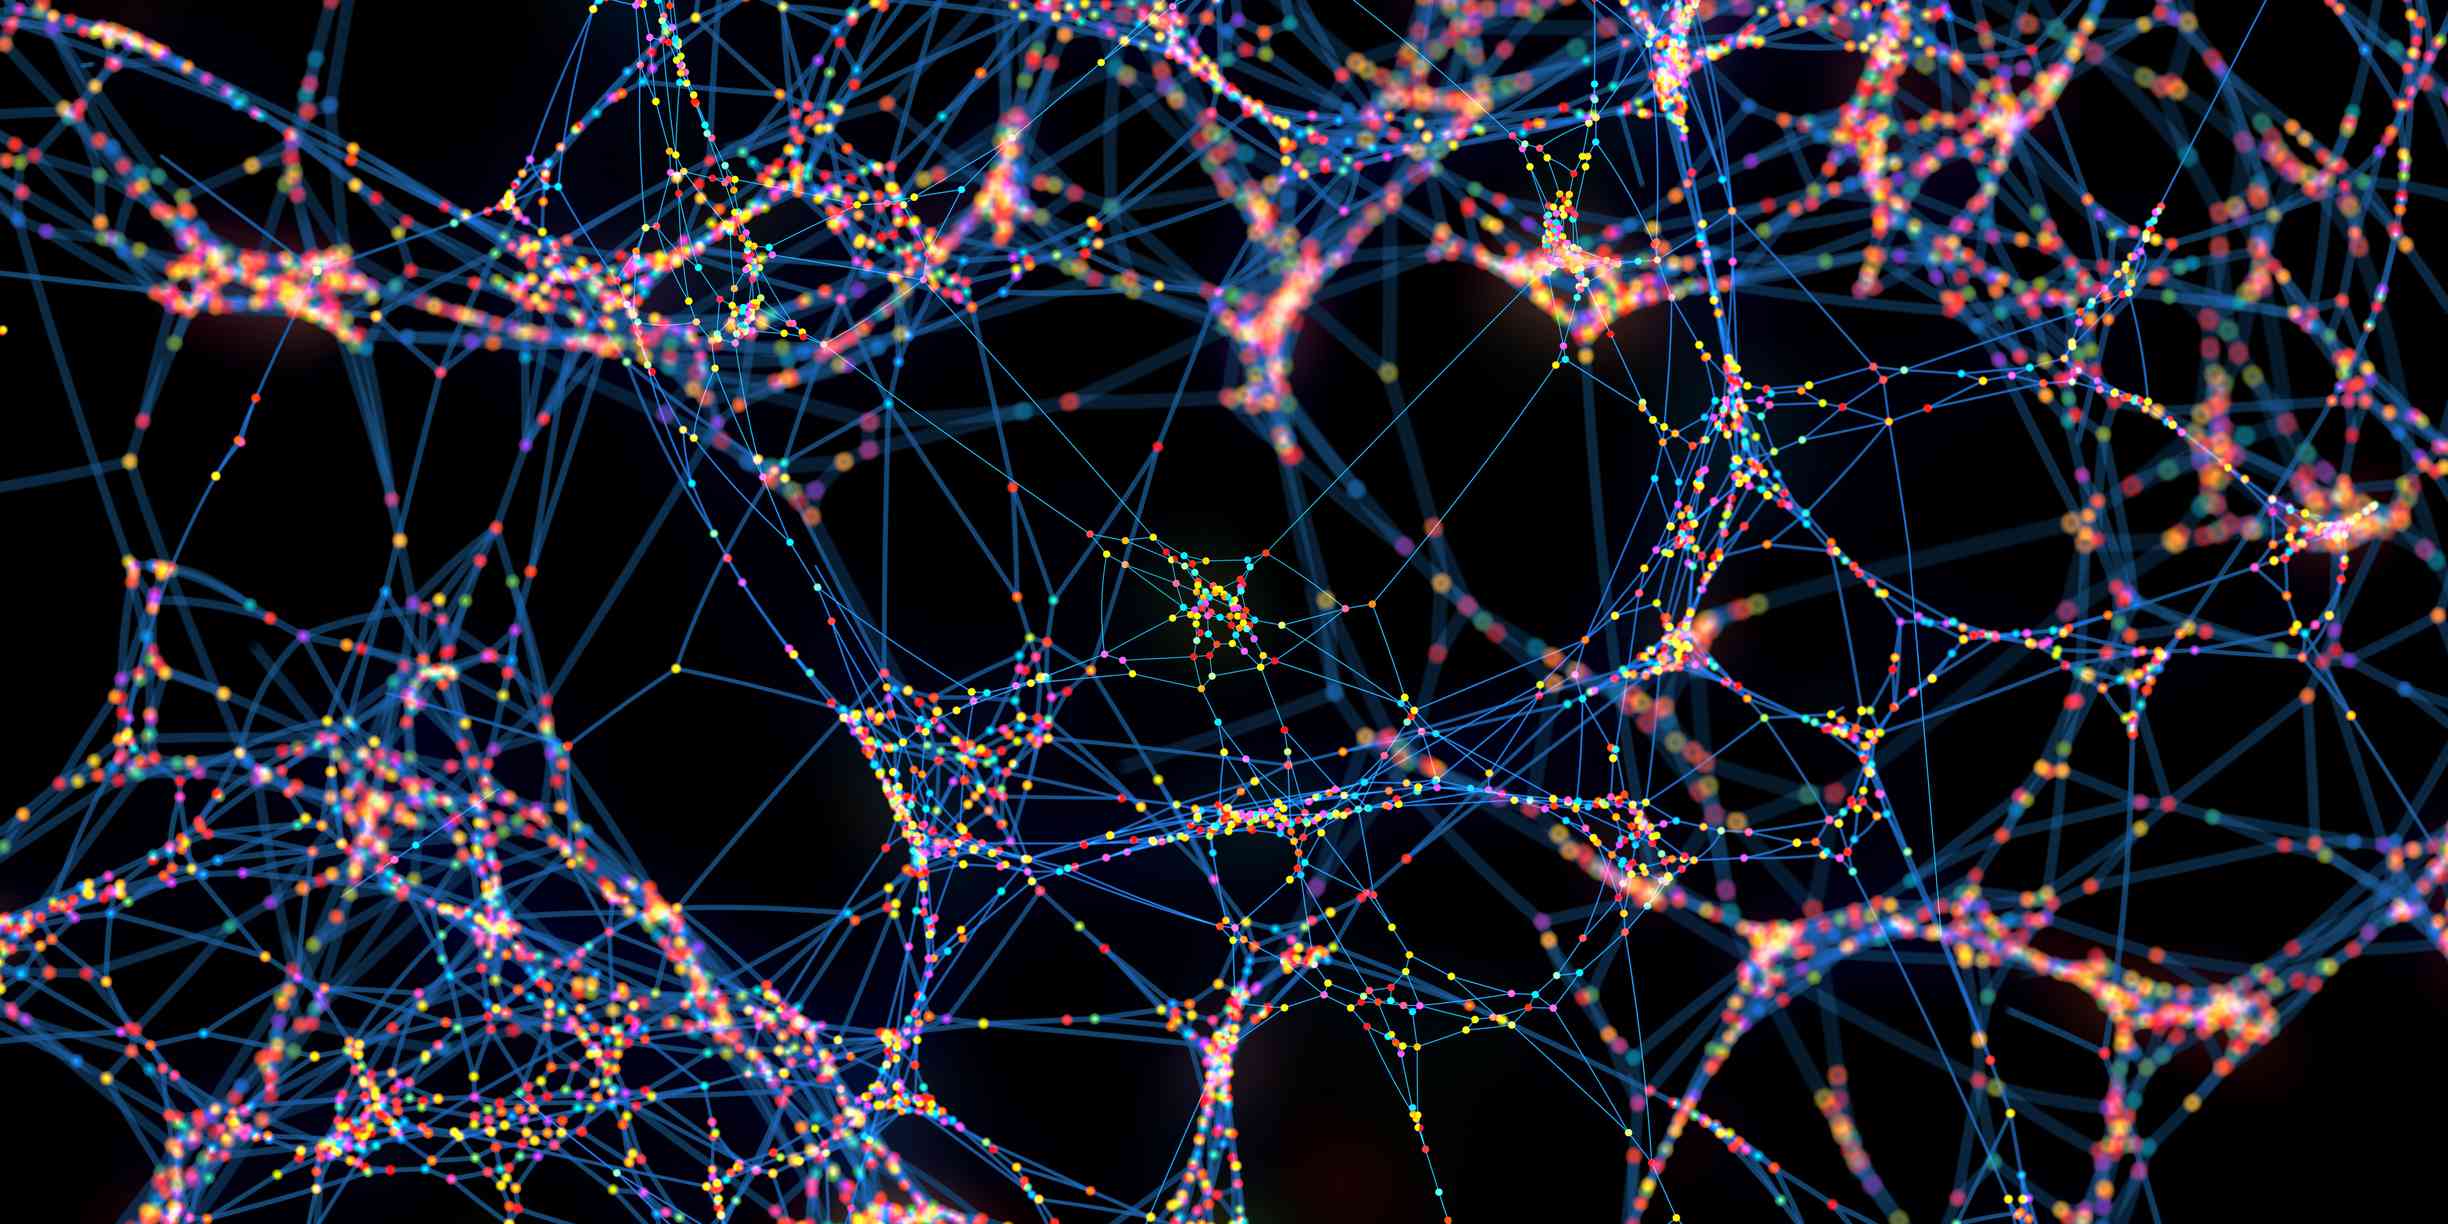 Abstract netwerk van veelkleurige bollen-conceptuele afbeelding van gekleurde datapakketten.